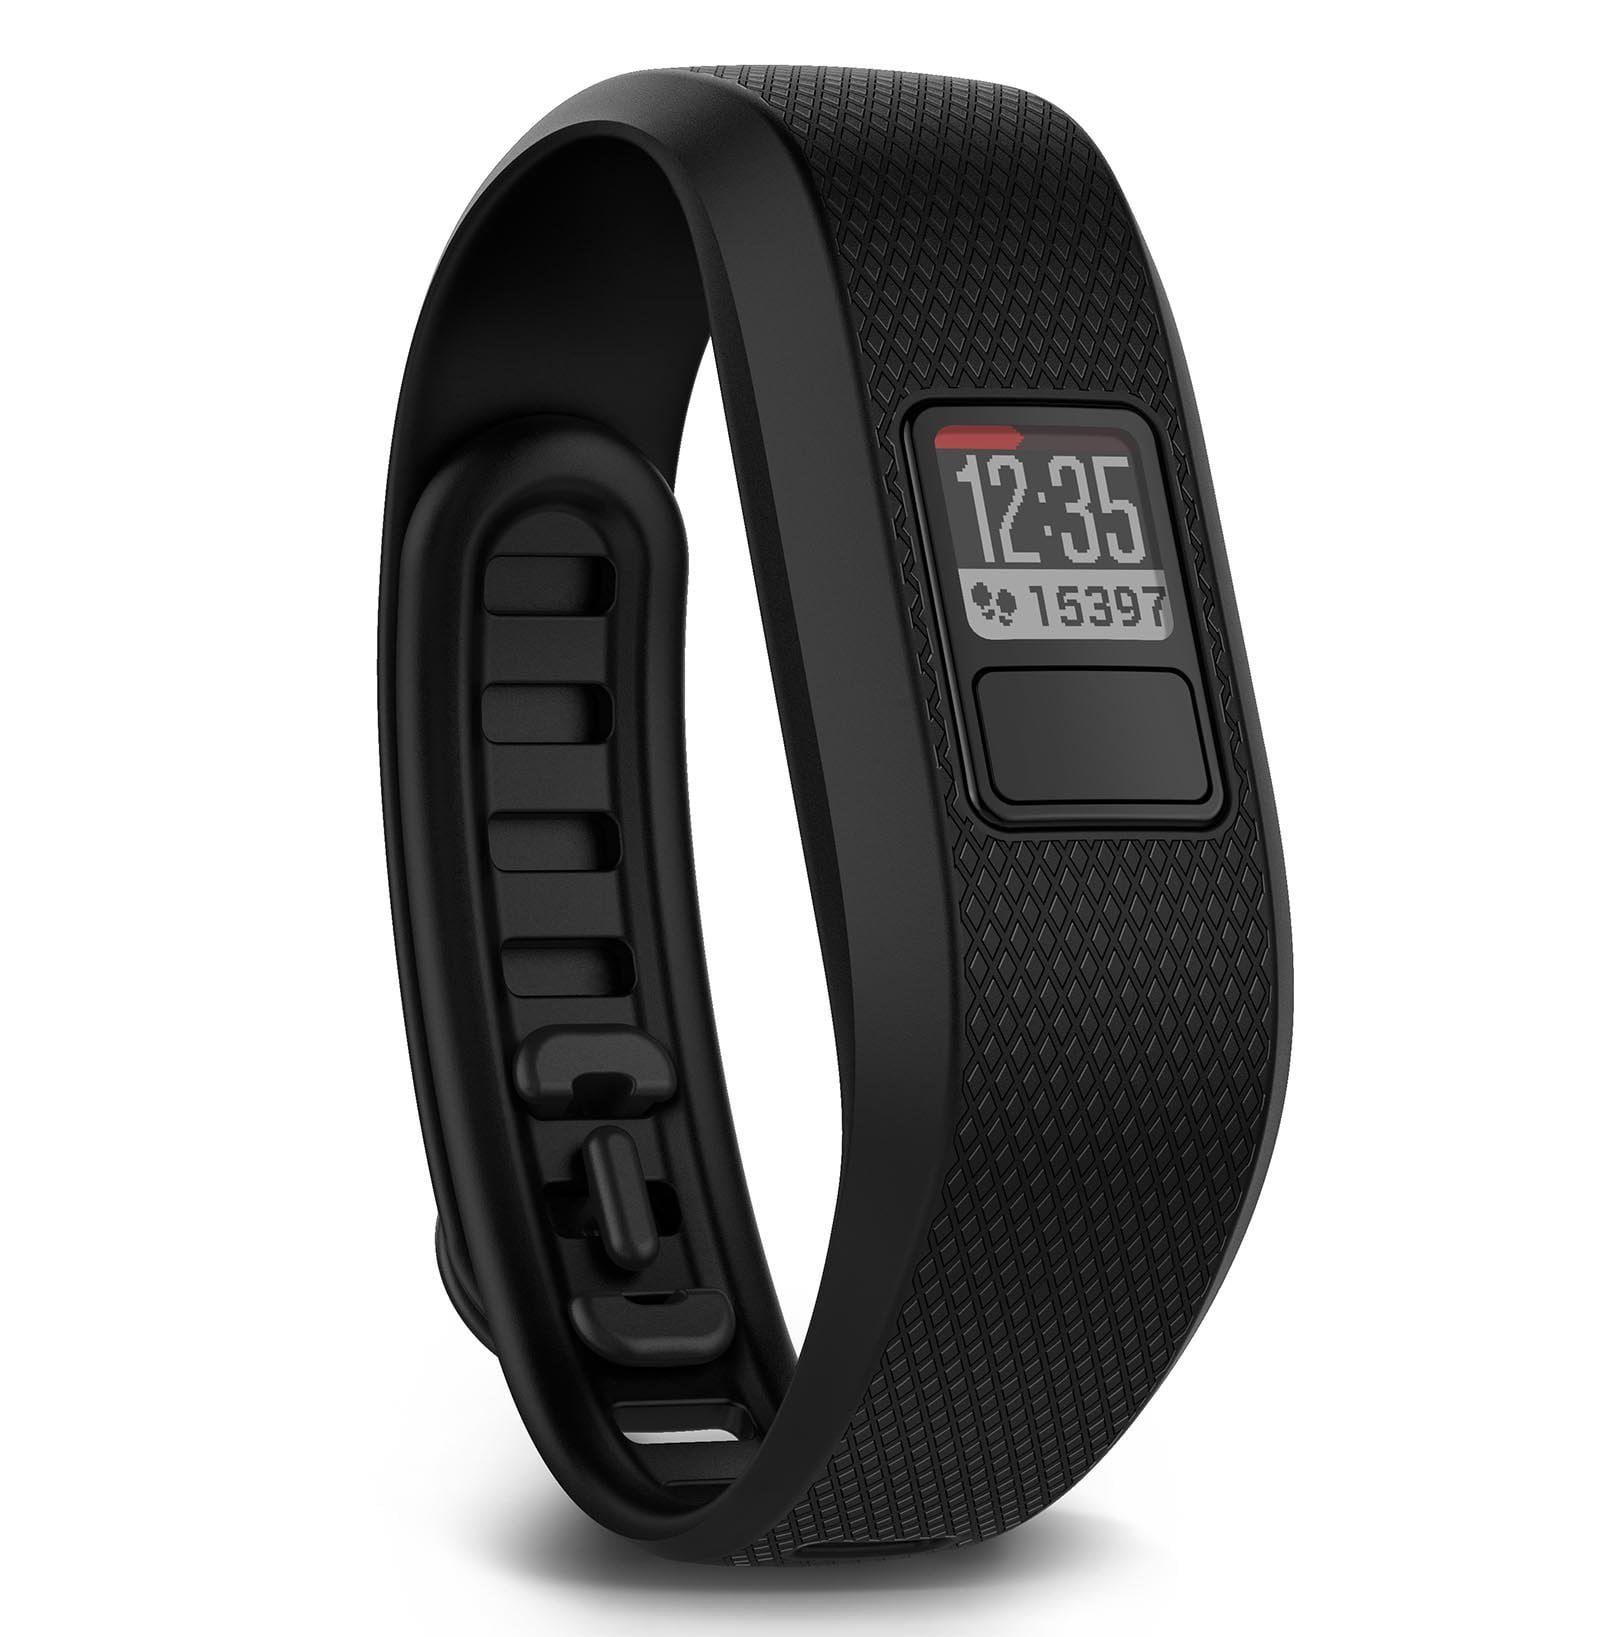 Vivofit 3 Running Activity Monitor Band Fitness Tracker, Regular Black - Walmart.com